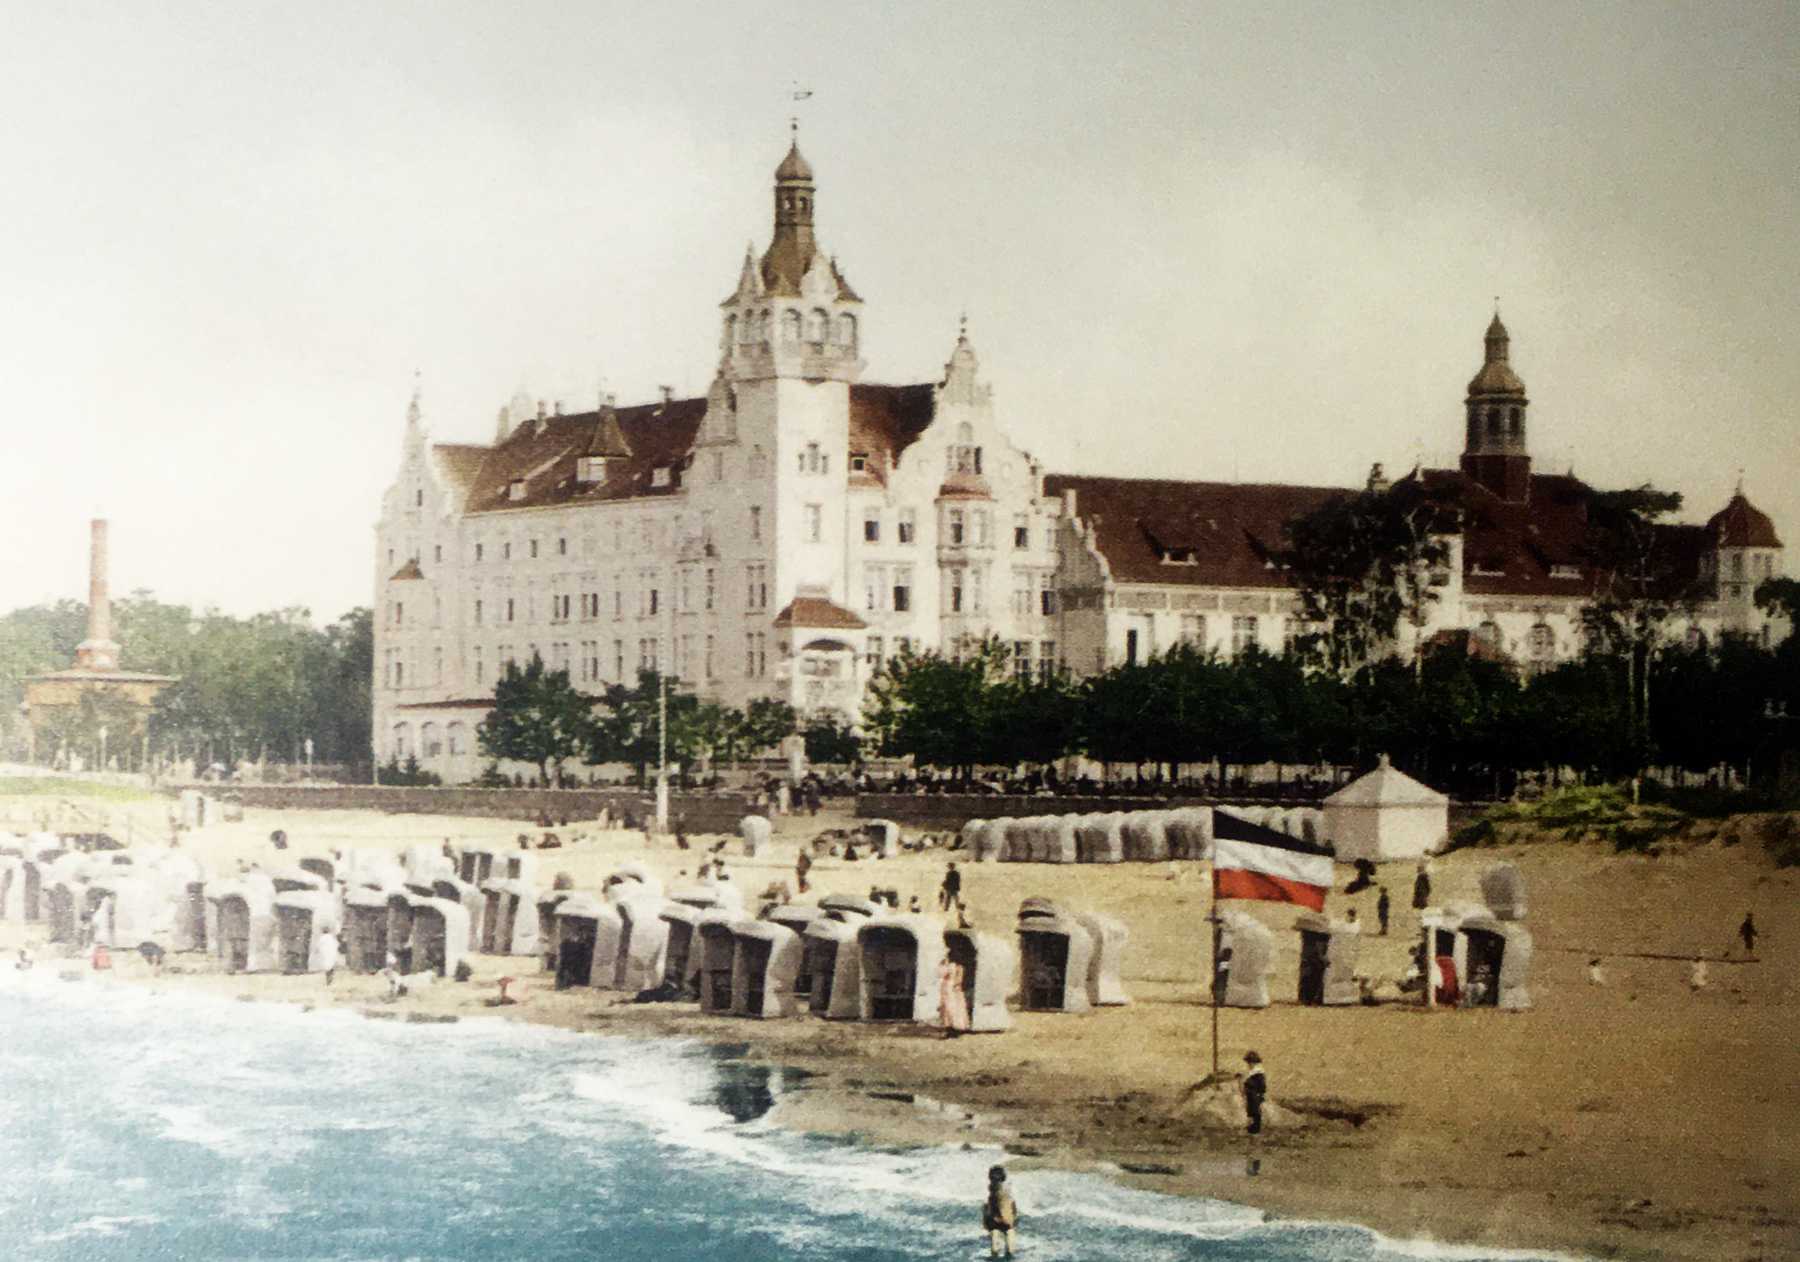 Strandschloss von der Seeseite (1900), Quelle: EZTH